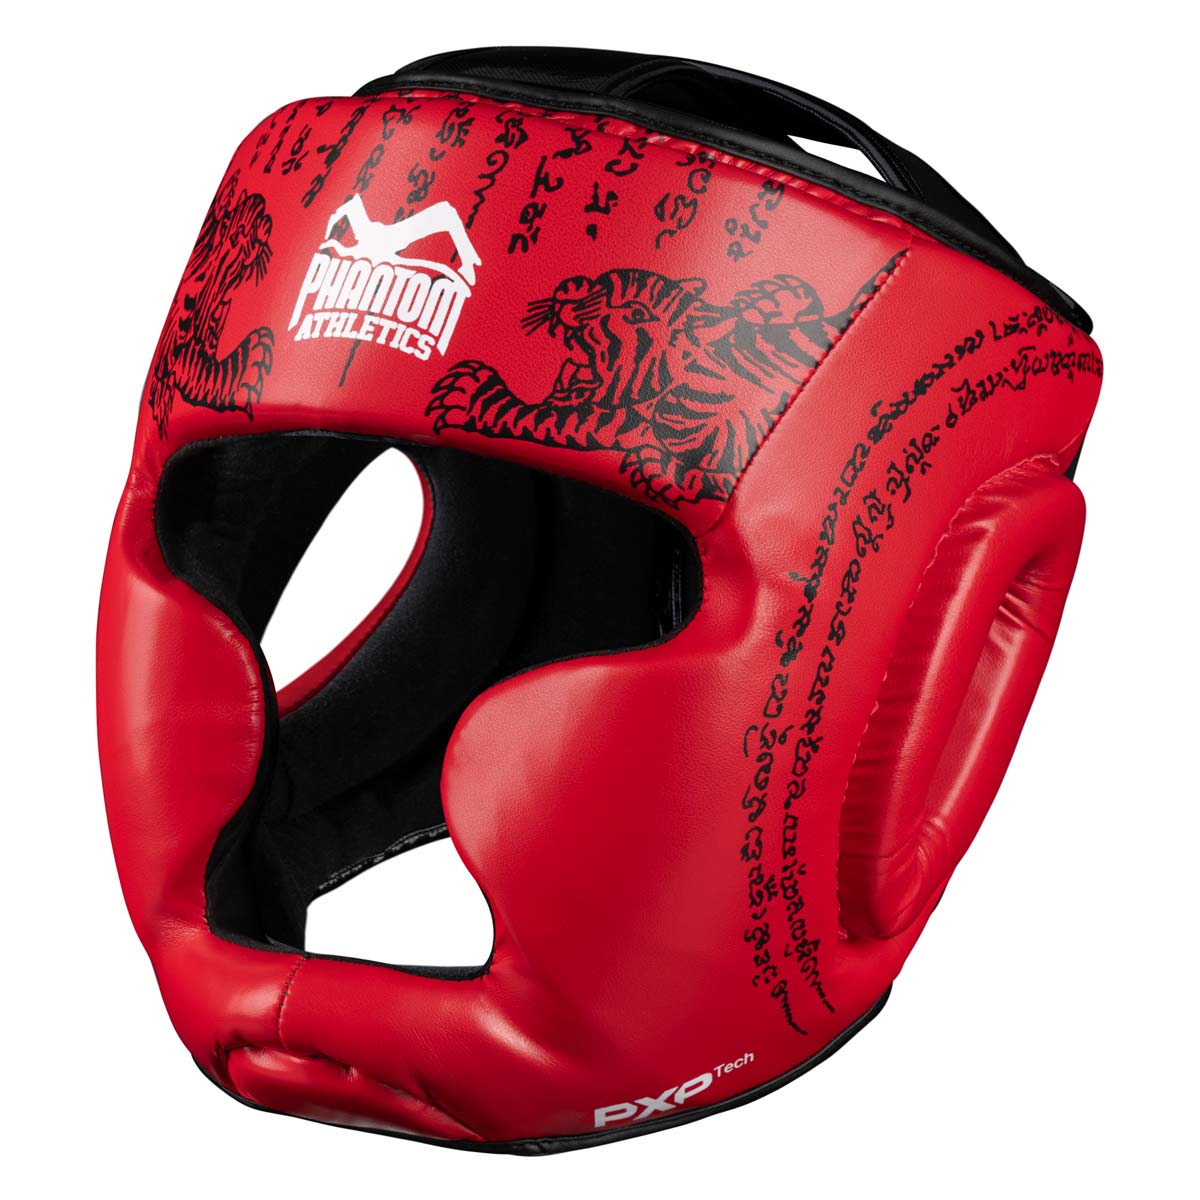 Proteção de cabeça Phantom Muay Thai para boxe tailandês e sparring, competição e treinamento de MMA. No design tradicional Sak Yant e na cor vermelha.